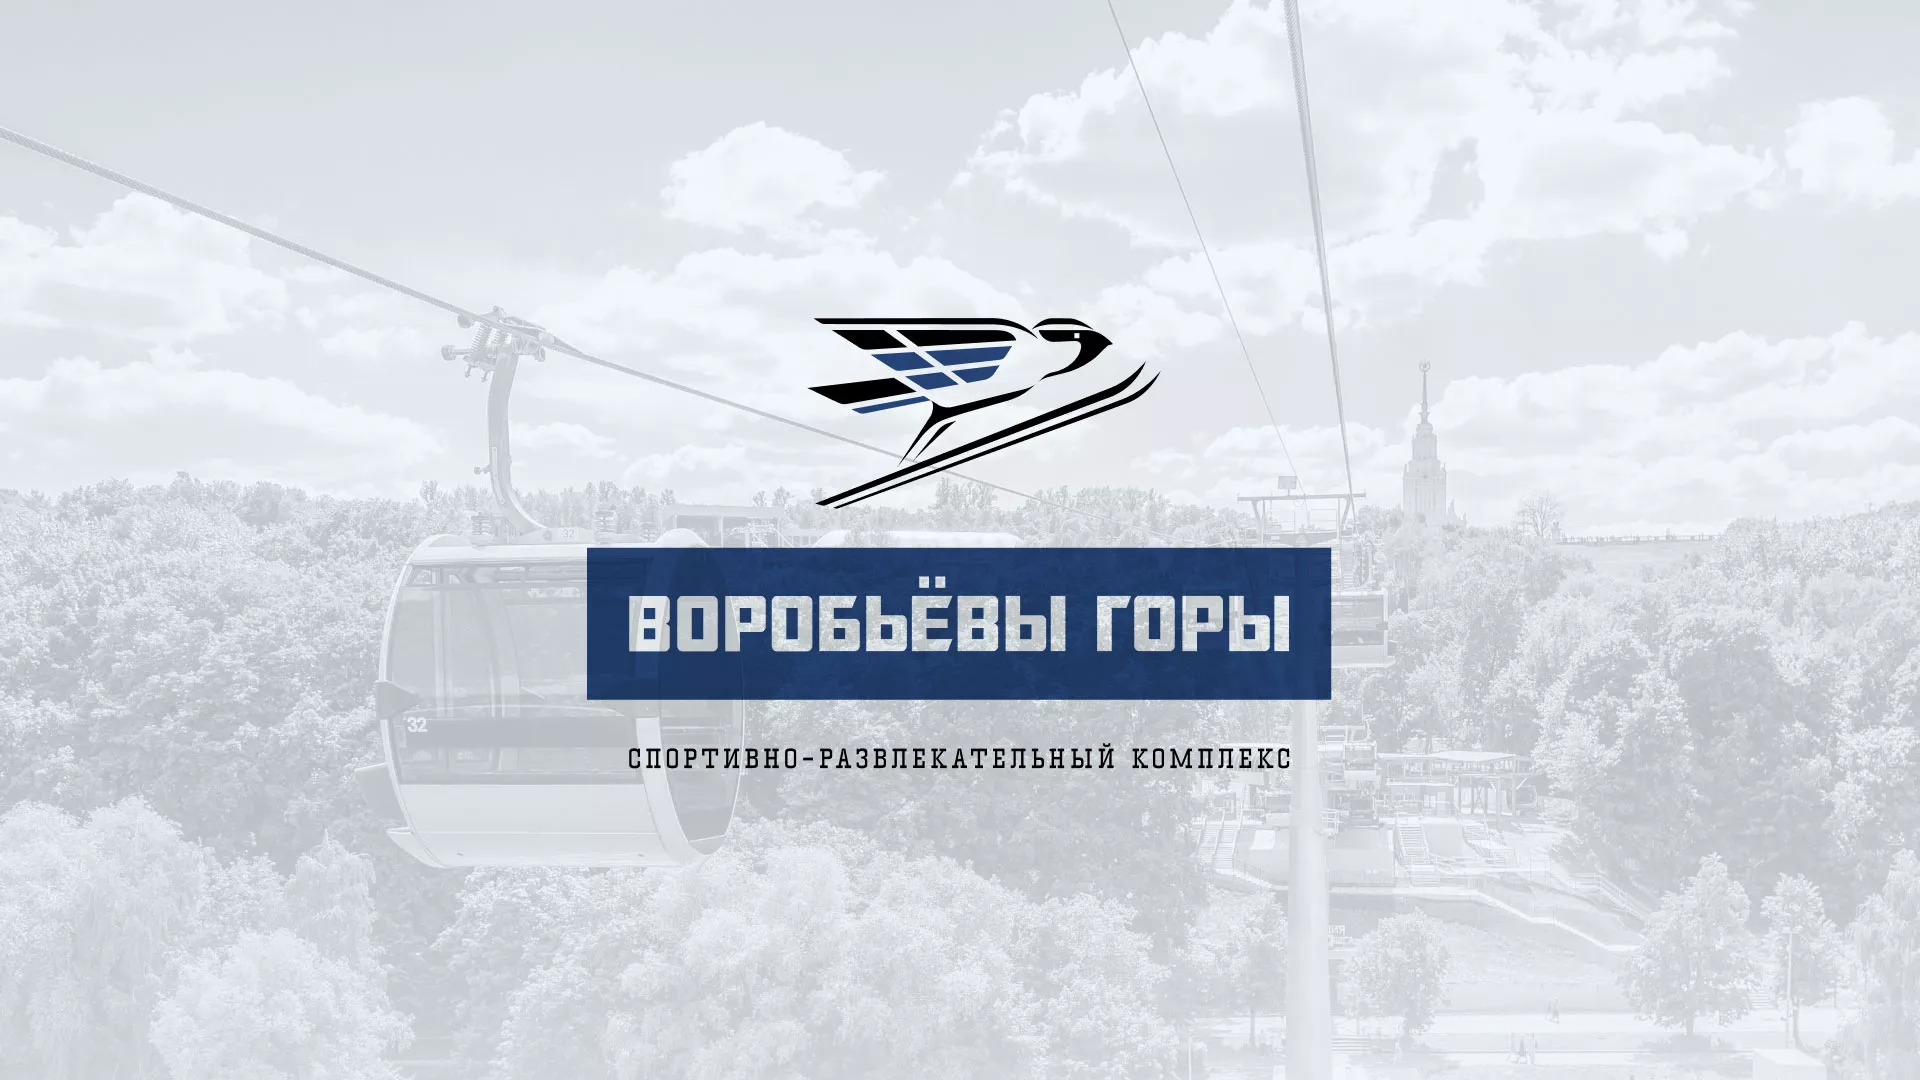 Разработка сайта в Володарске для спортивно-развлекательного комплекса «Воробьёвы горы»